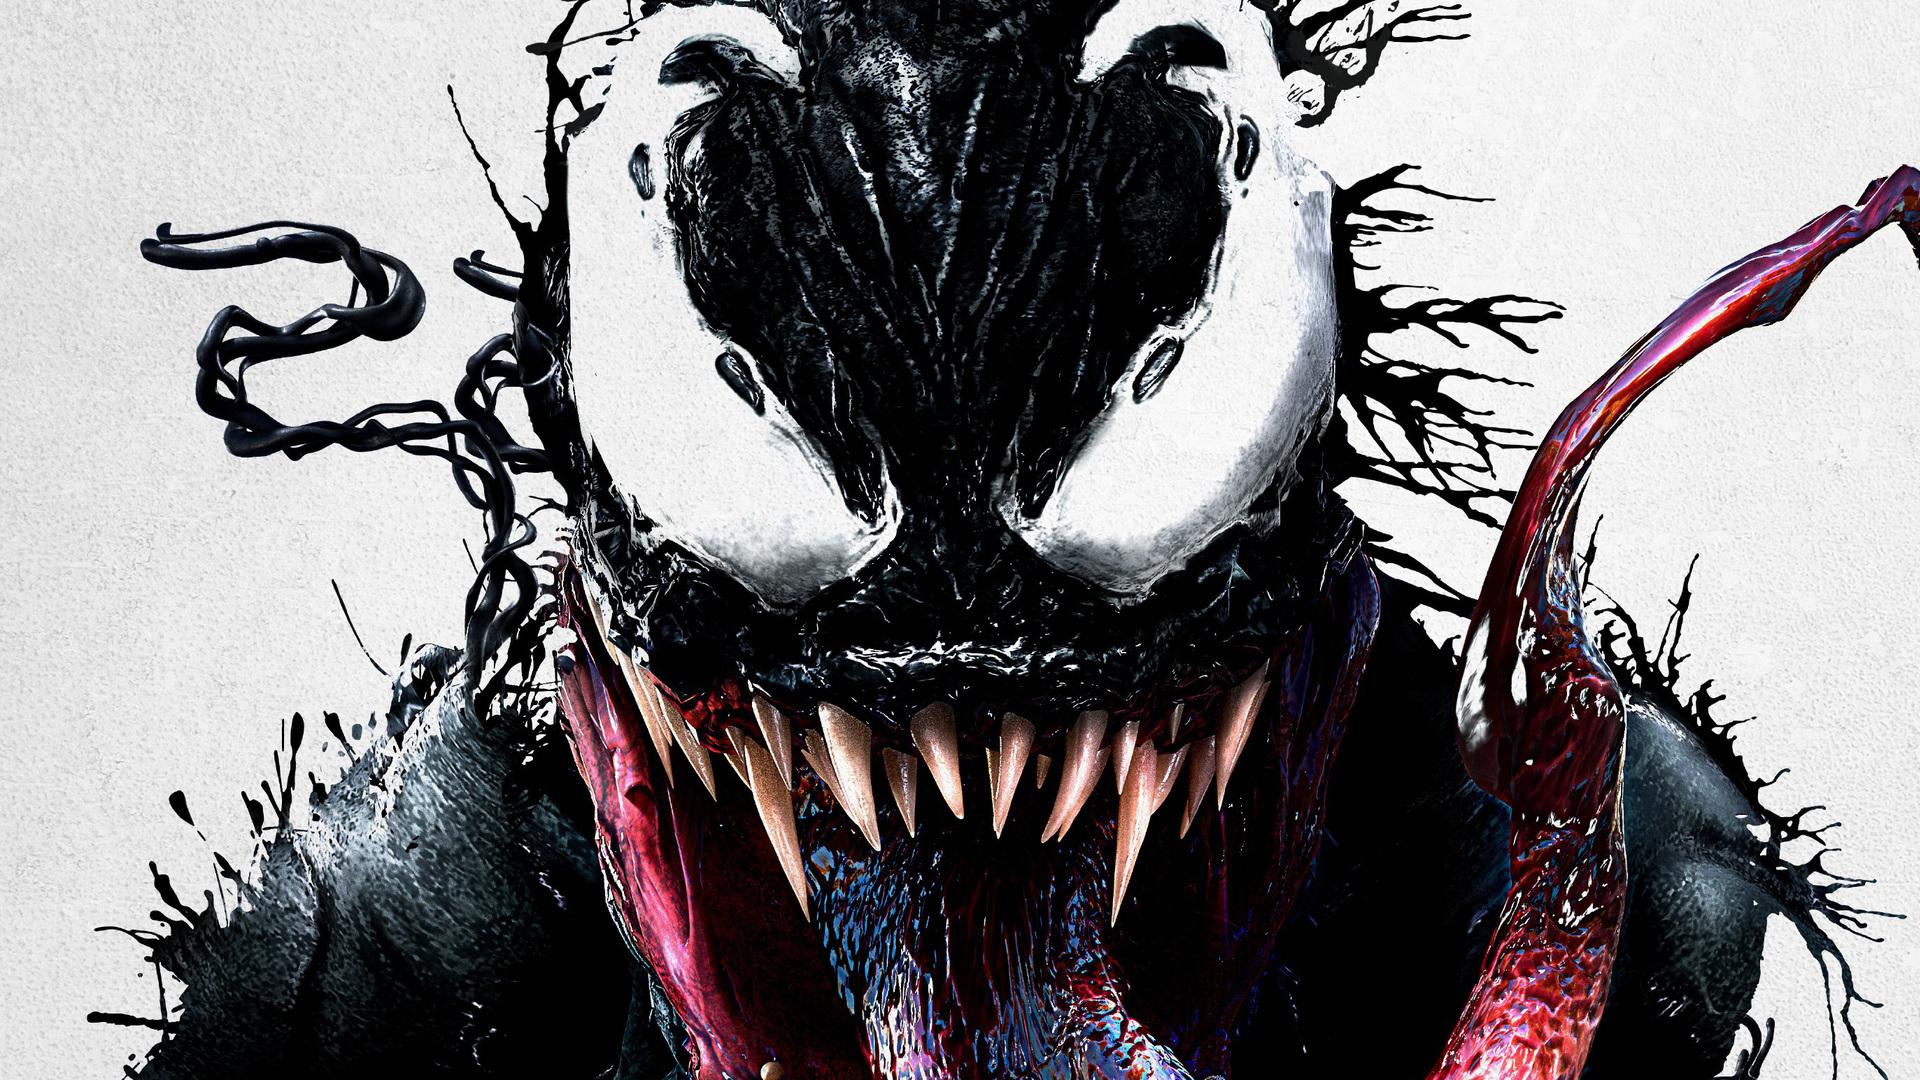 Venom Movie Background. TV SHOWS AIRING